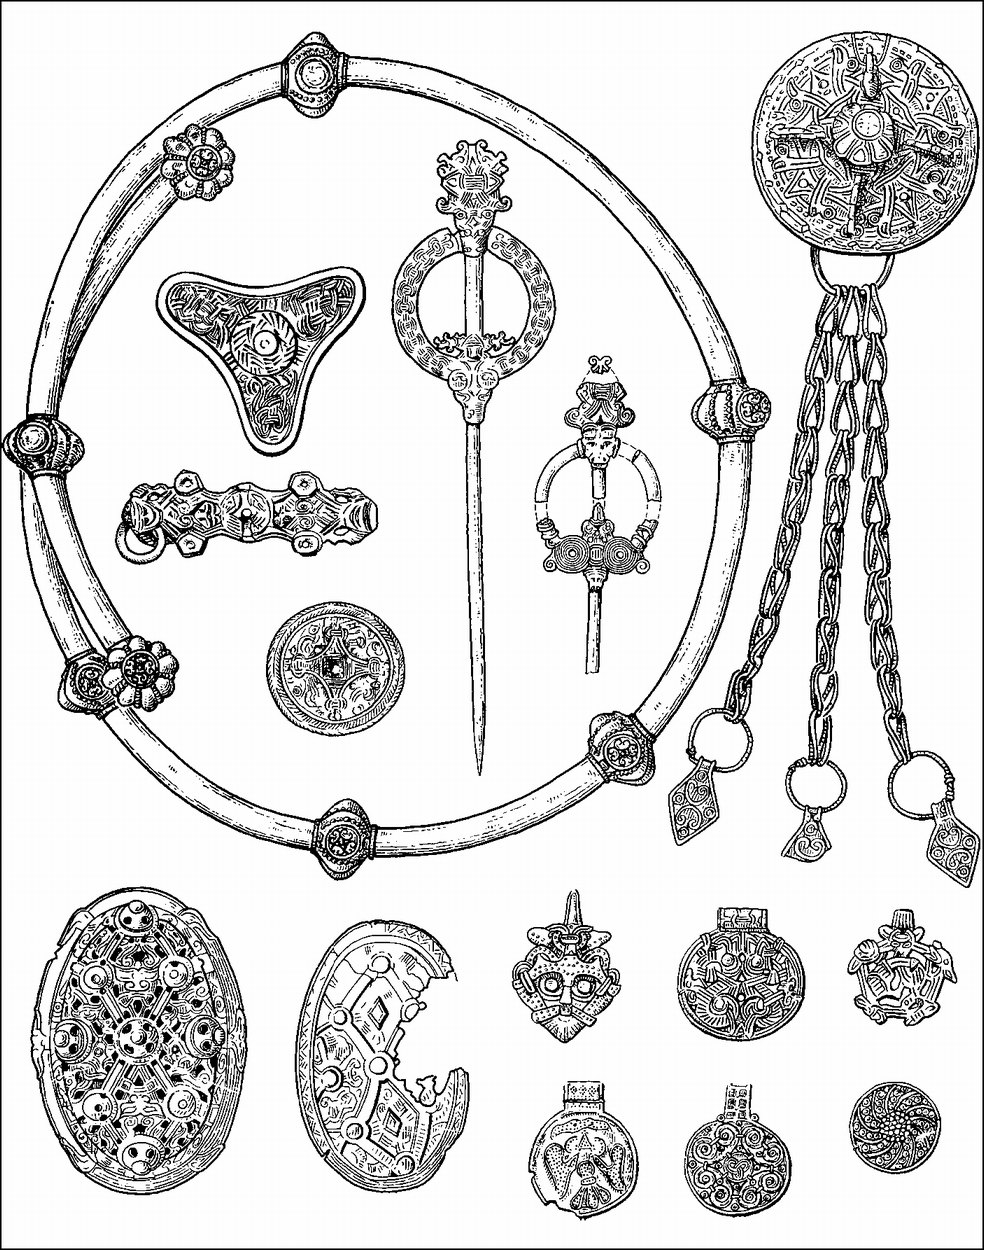 Скандинавские древности в Восточной Европе (Древняя Русь. С. 405)